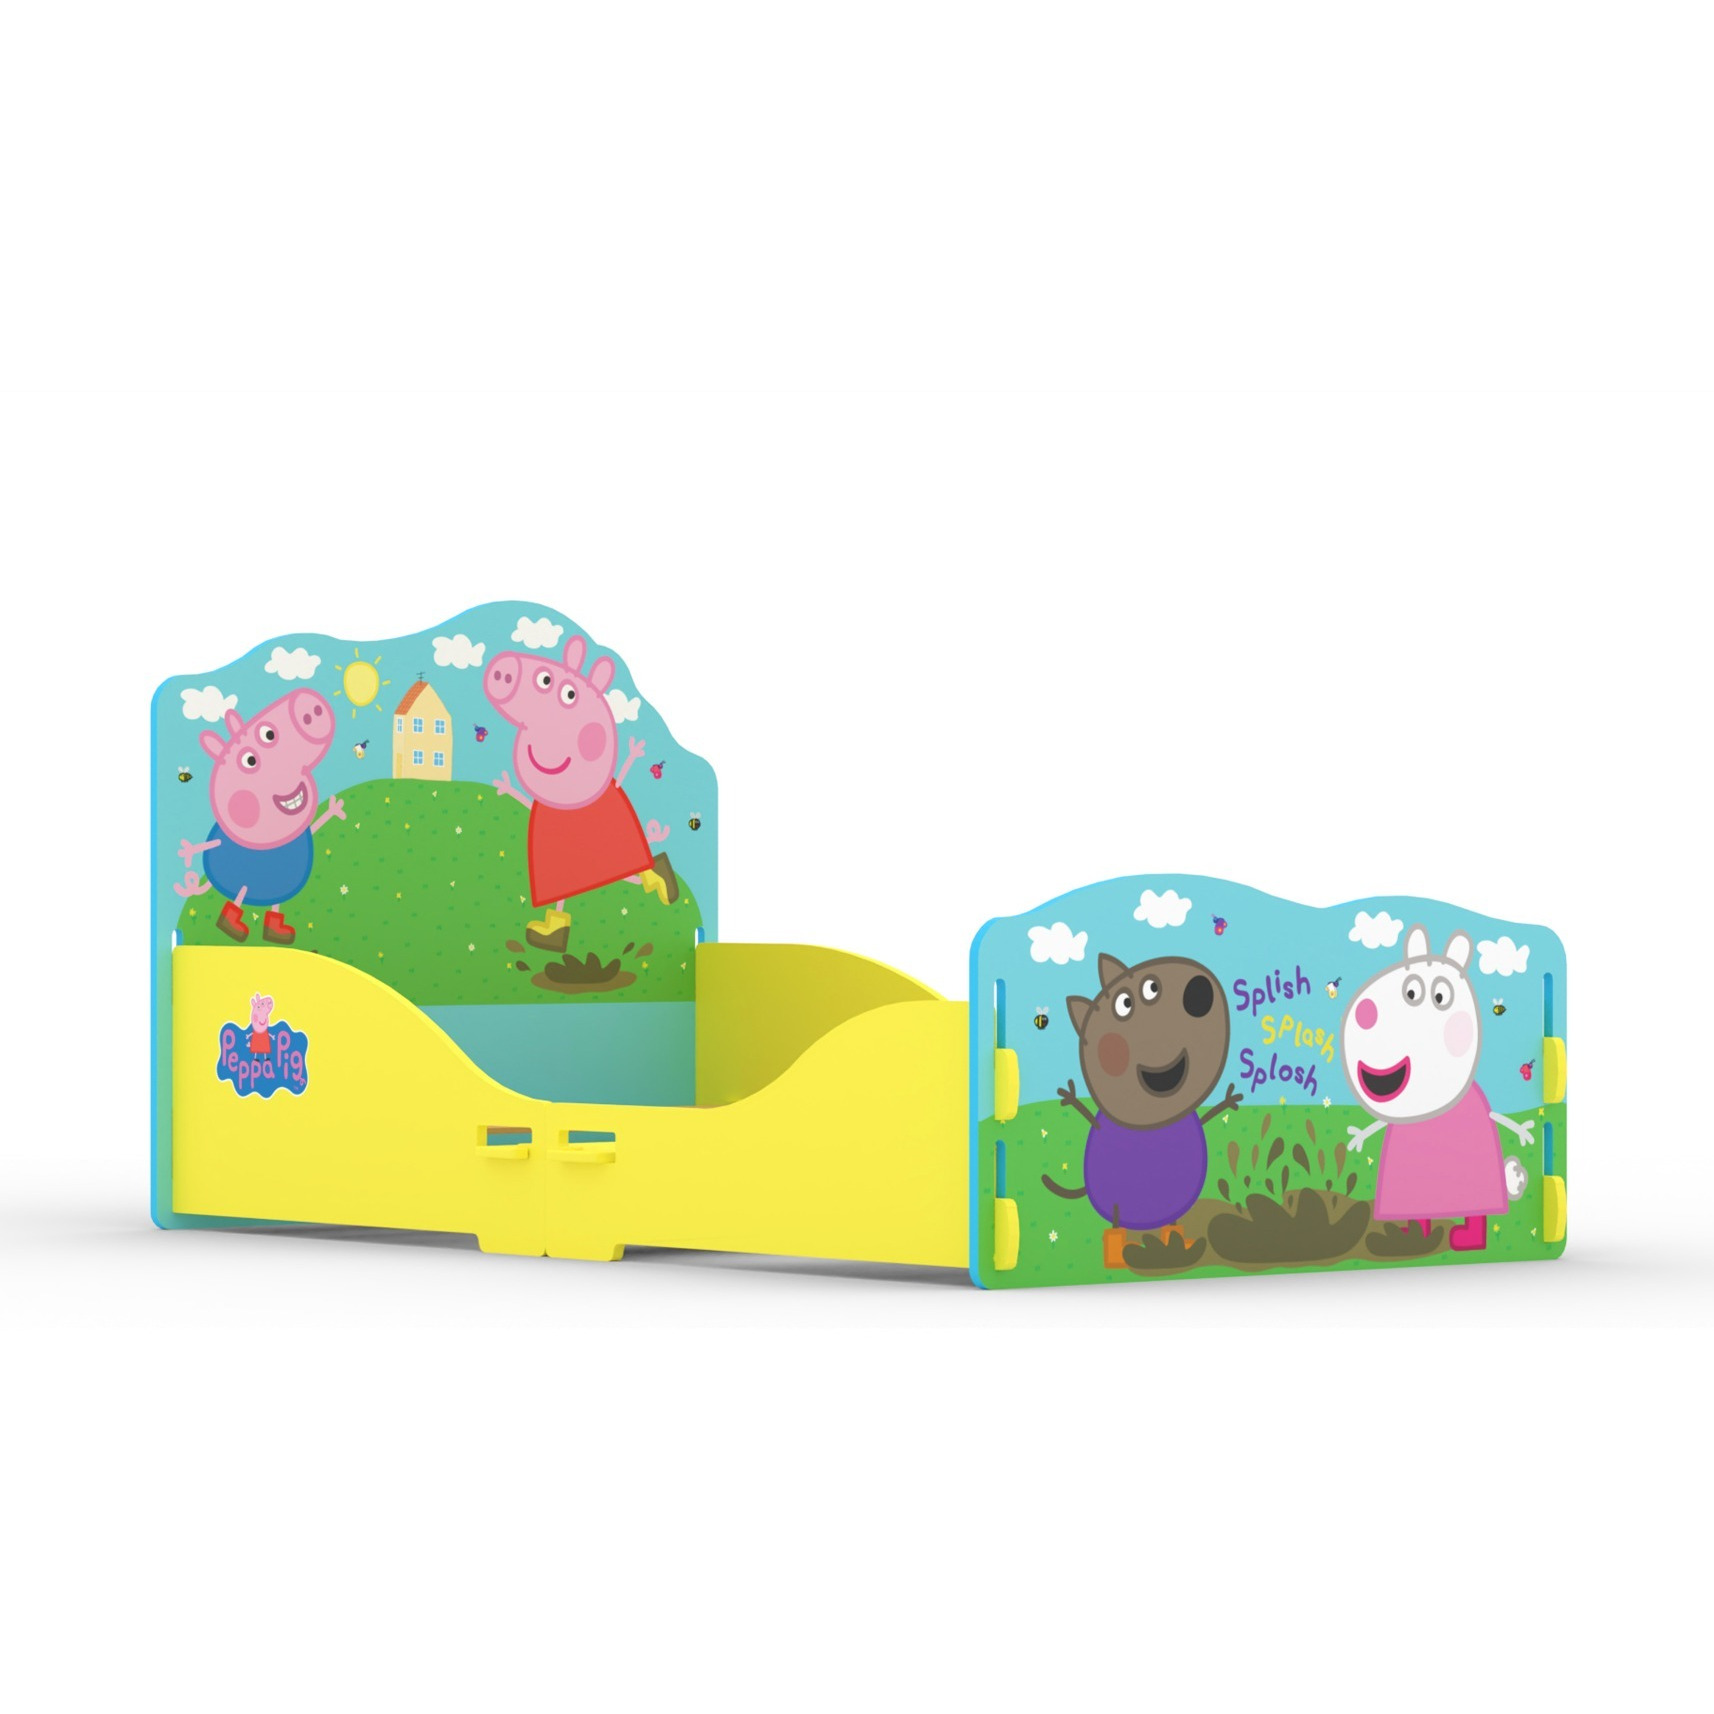 Kidsaw Peppa Pig Toddler Bed Frame - image 1